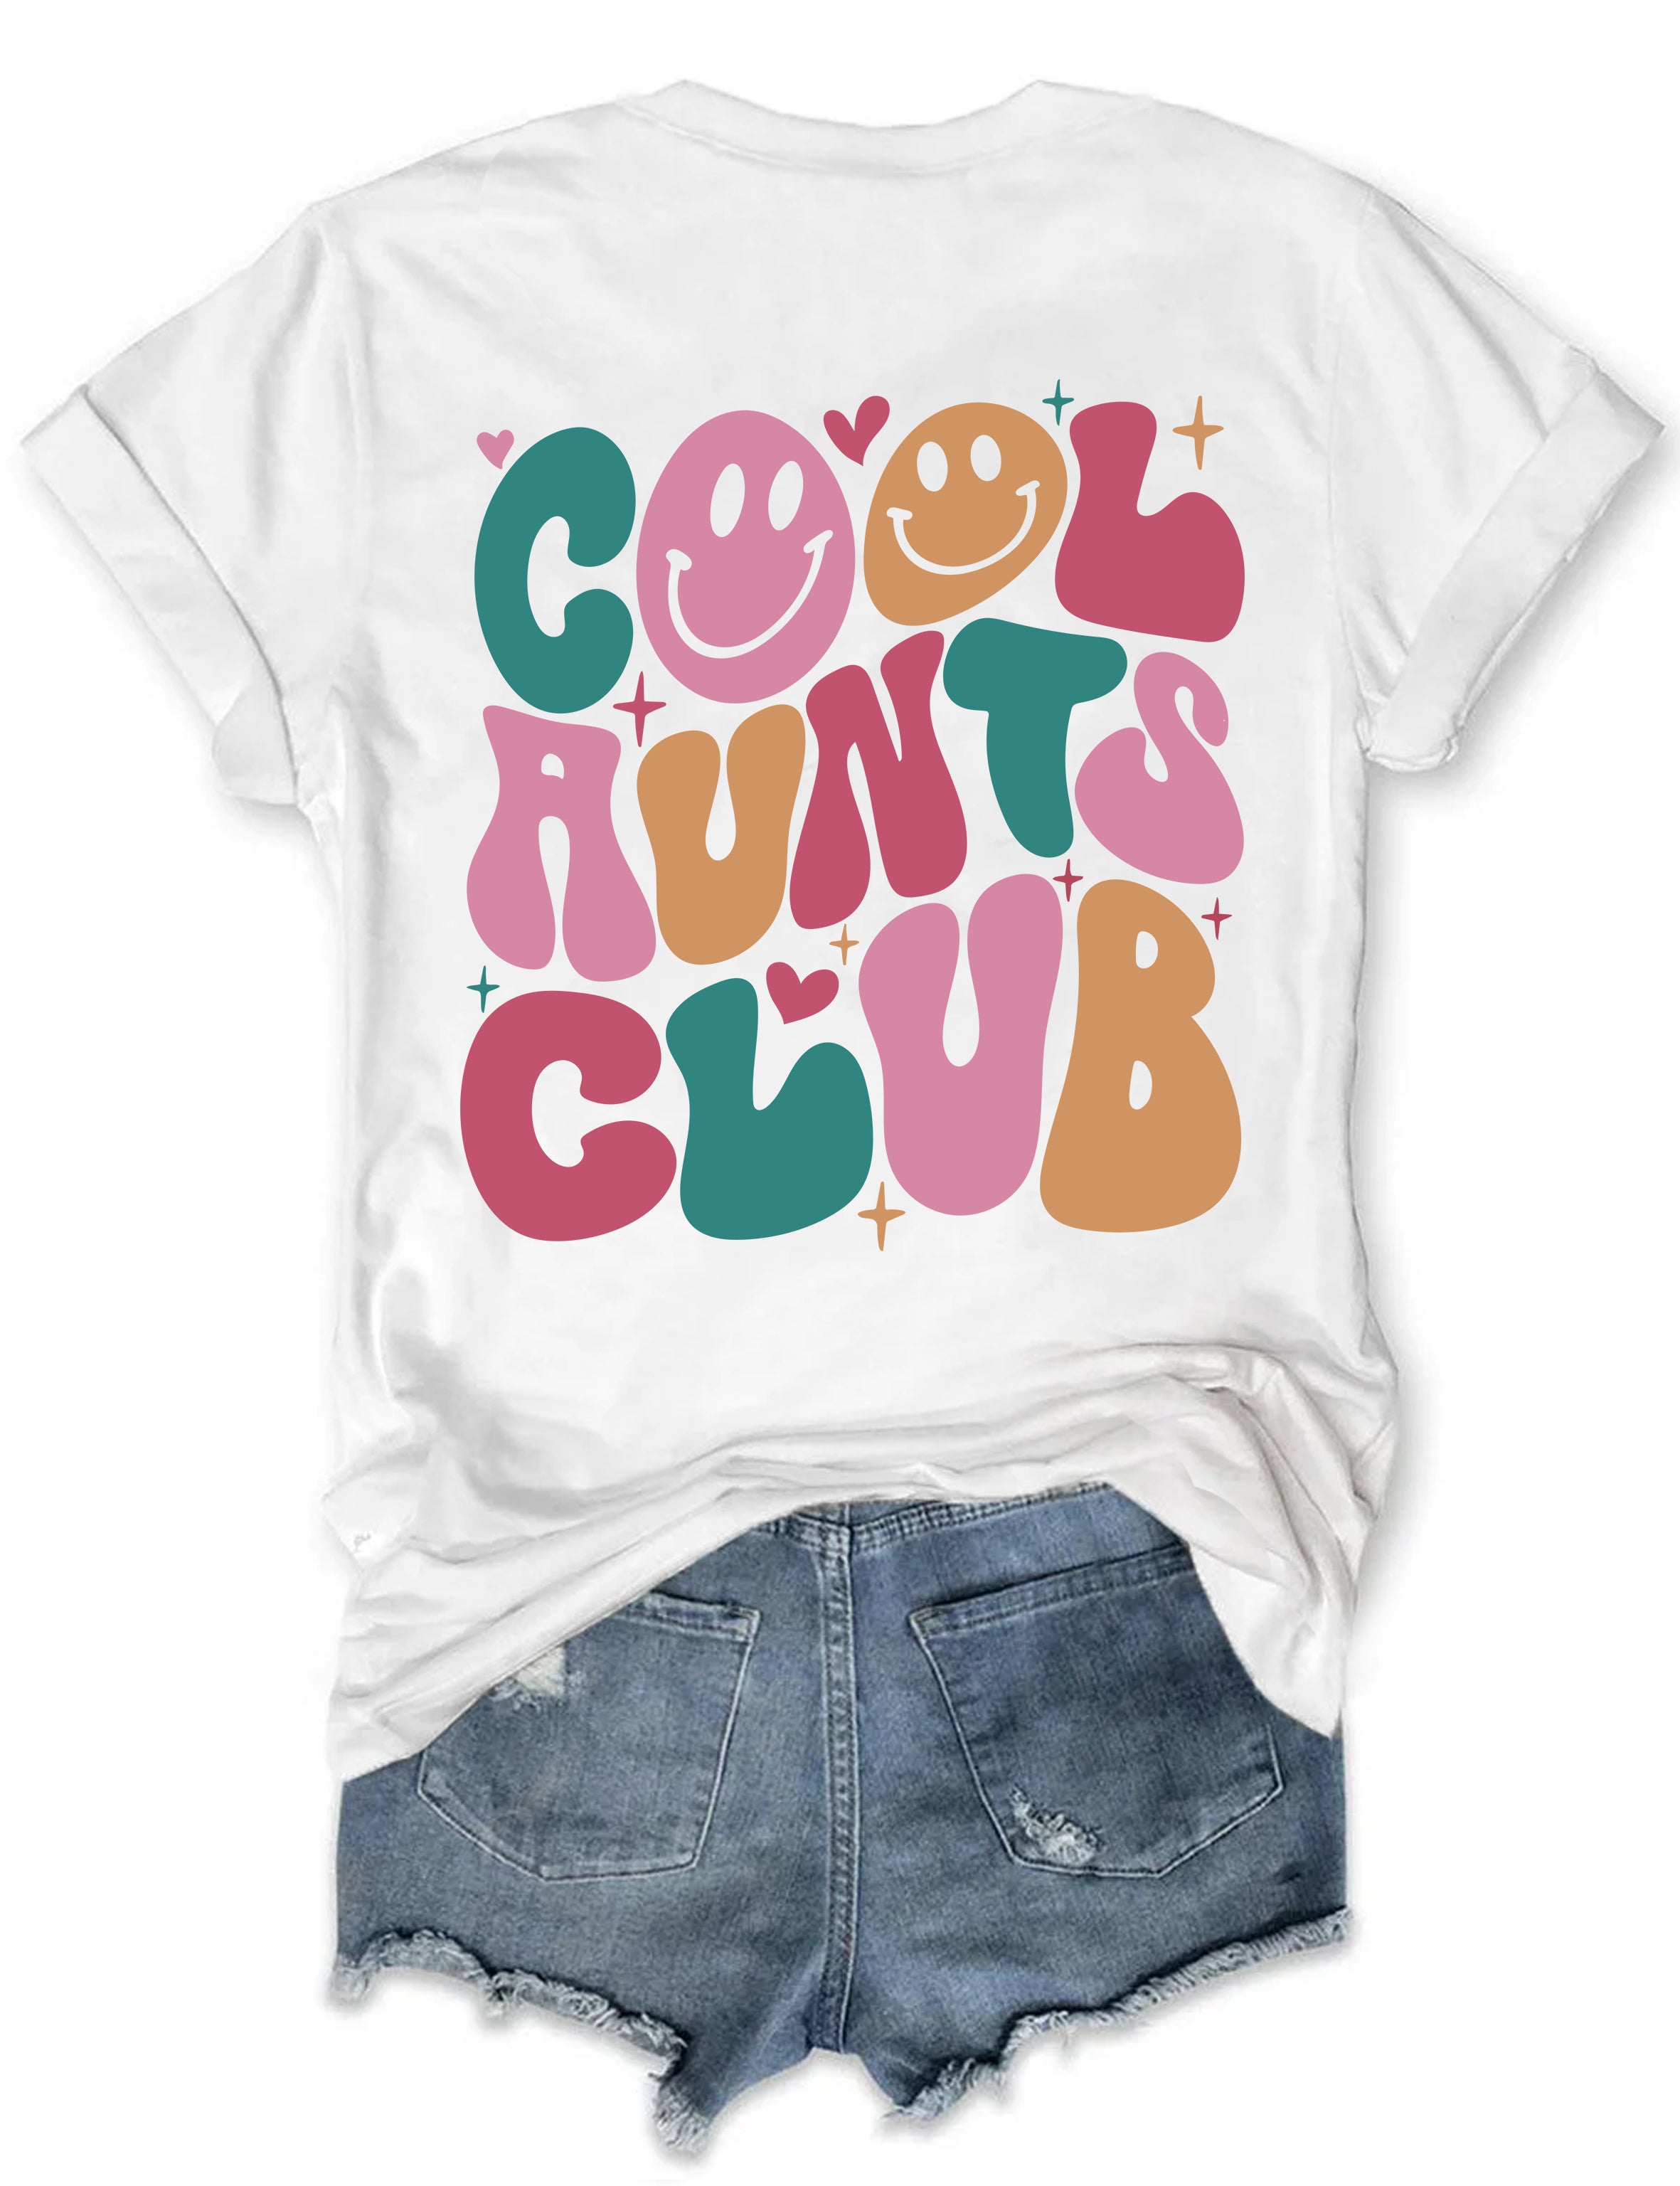 Cool Aunts Club T-shirt